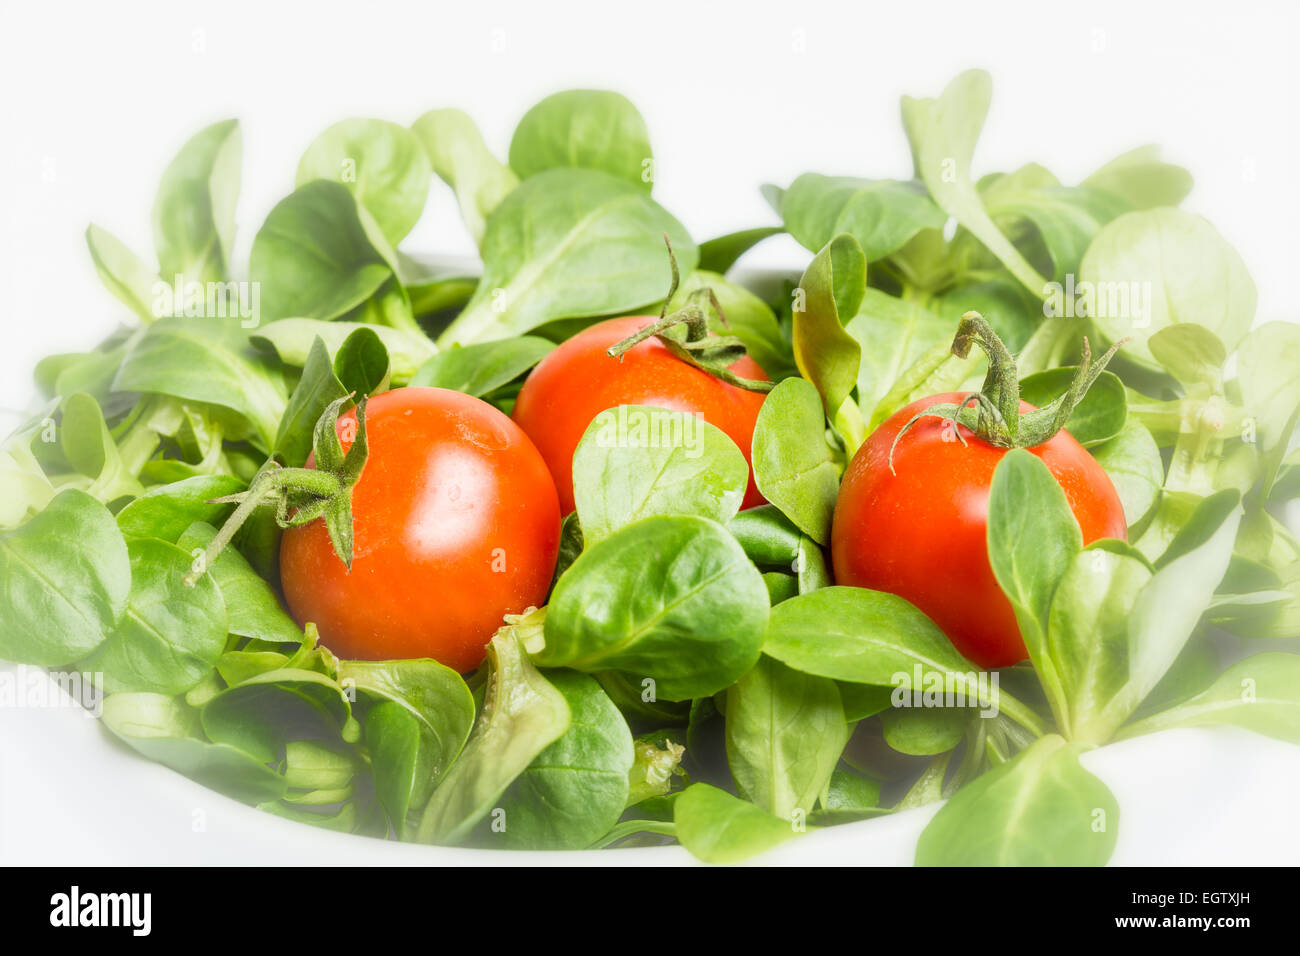 Valerianella locusta, salade de maïs, tomate cerise, mâche sur fond blanc Banque D'Images